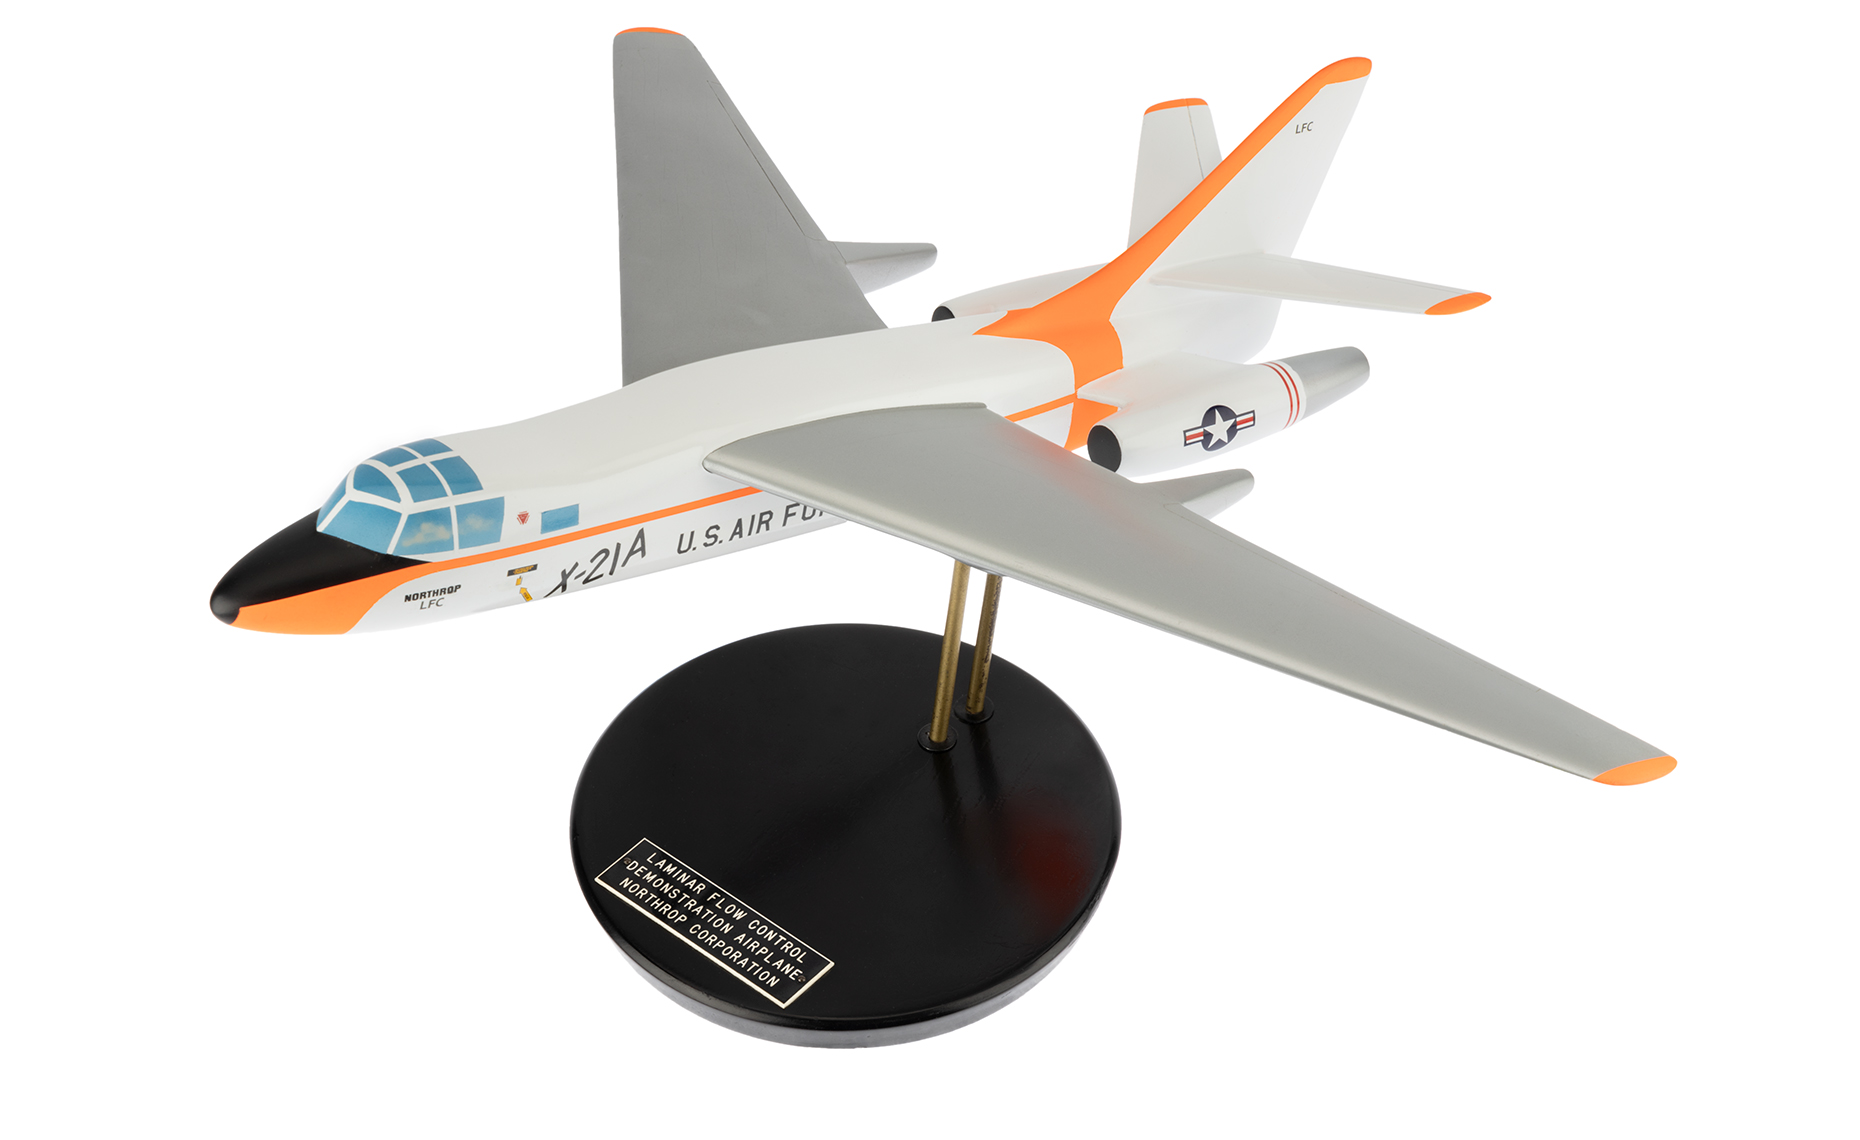 Northrop X-21A model